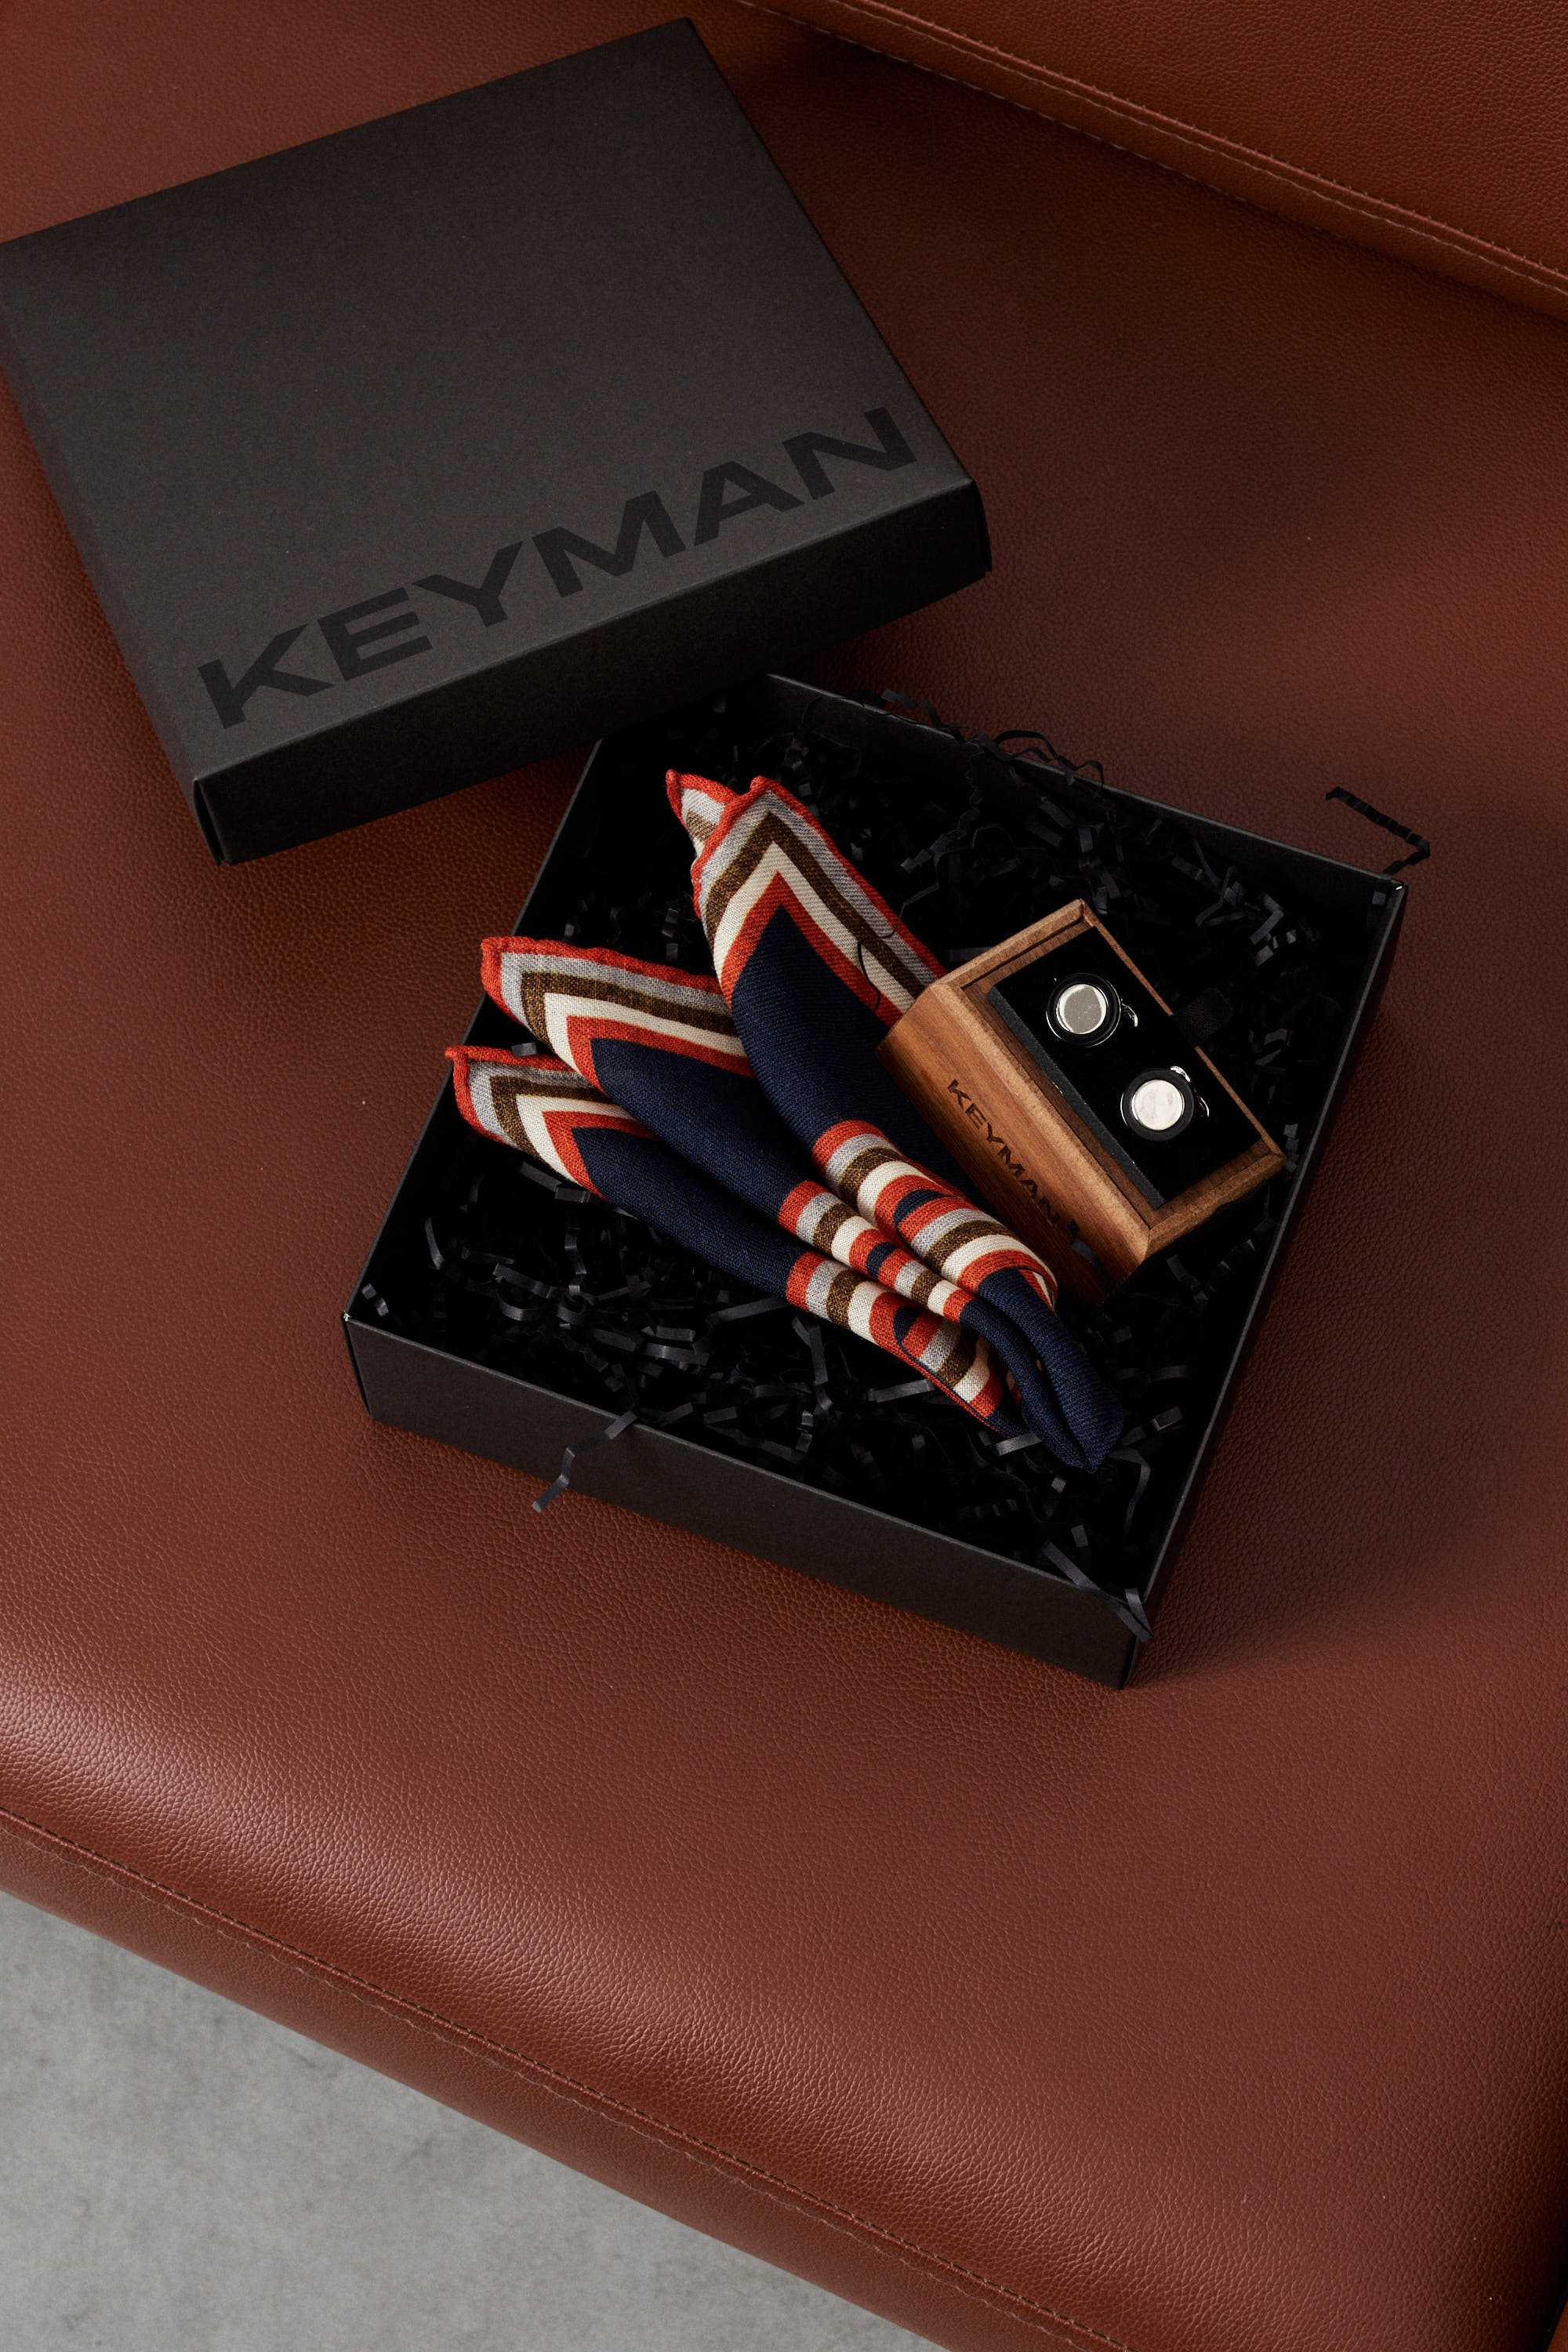 Пример подарочного набора Keyman (фирменная коробочка, платок в карман пиджака, запонки)